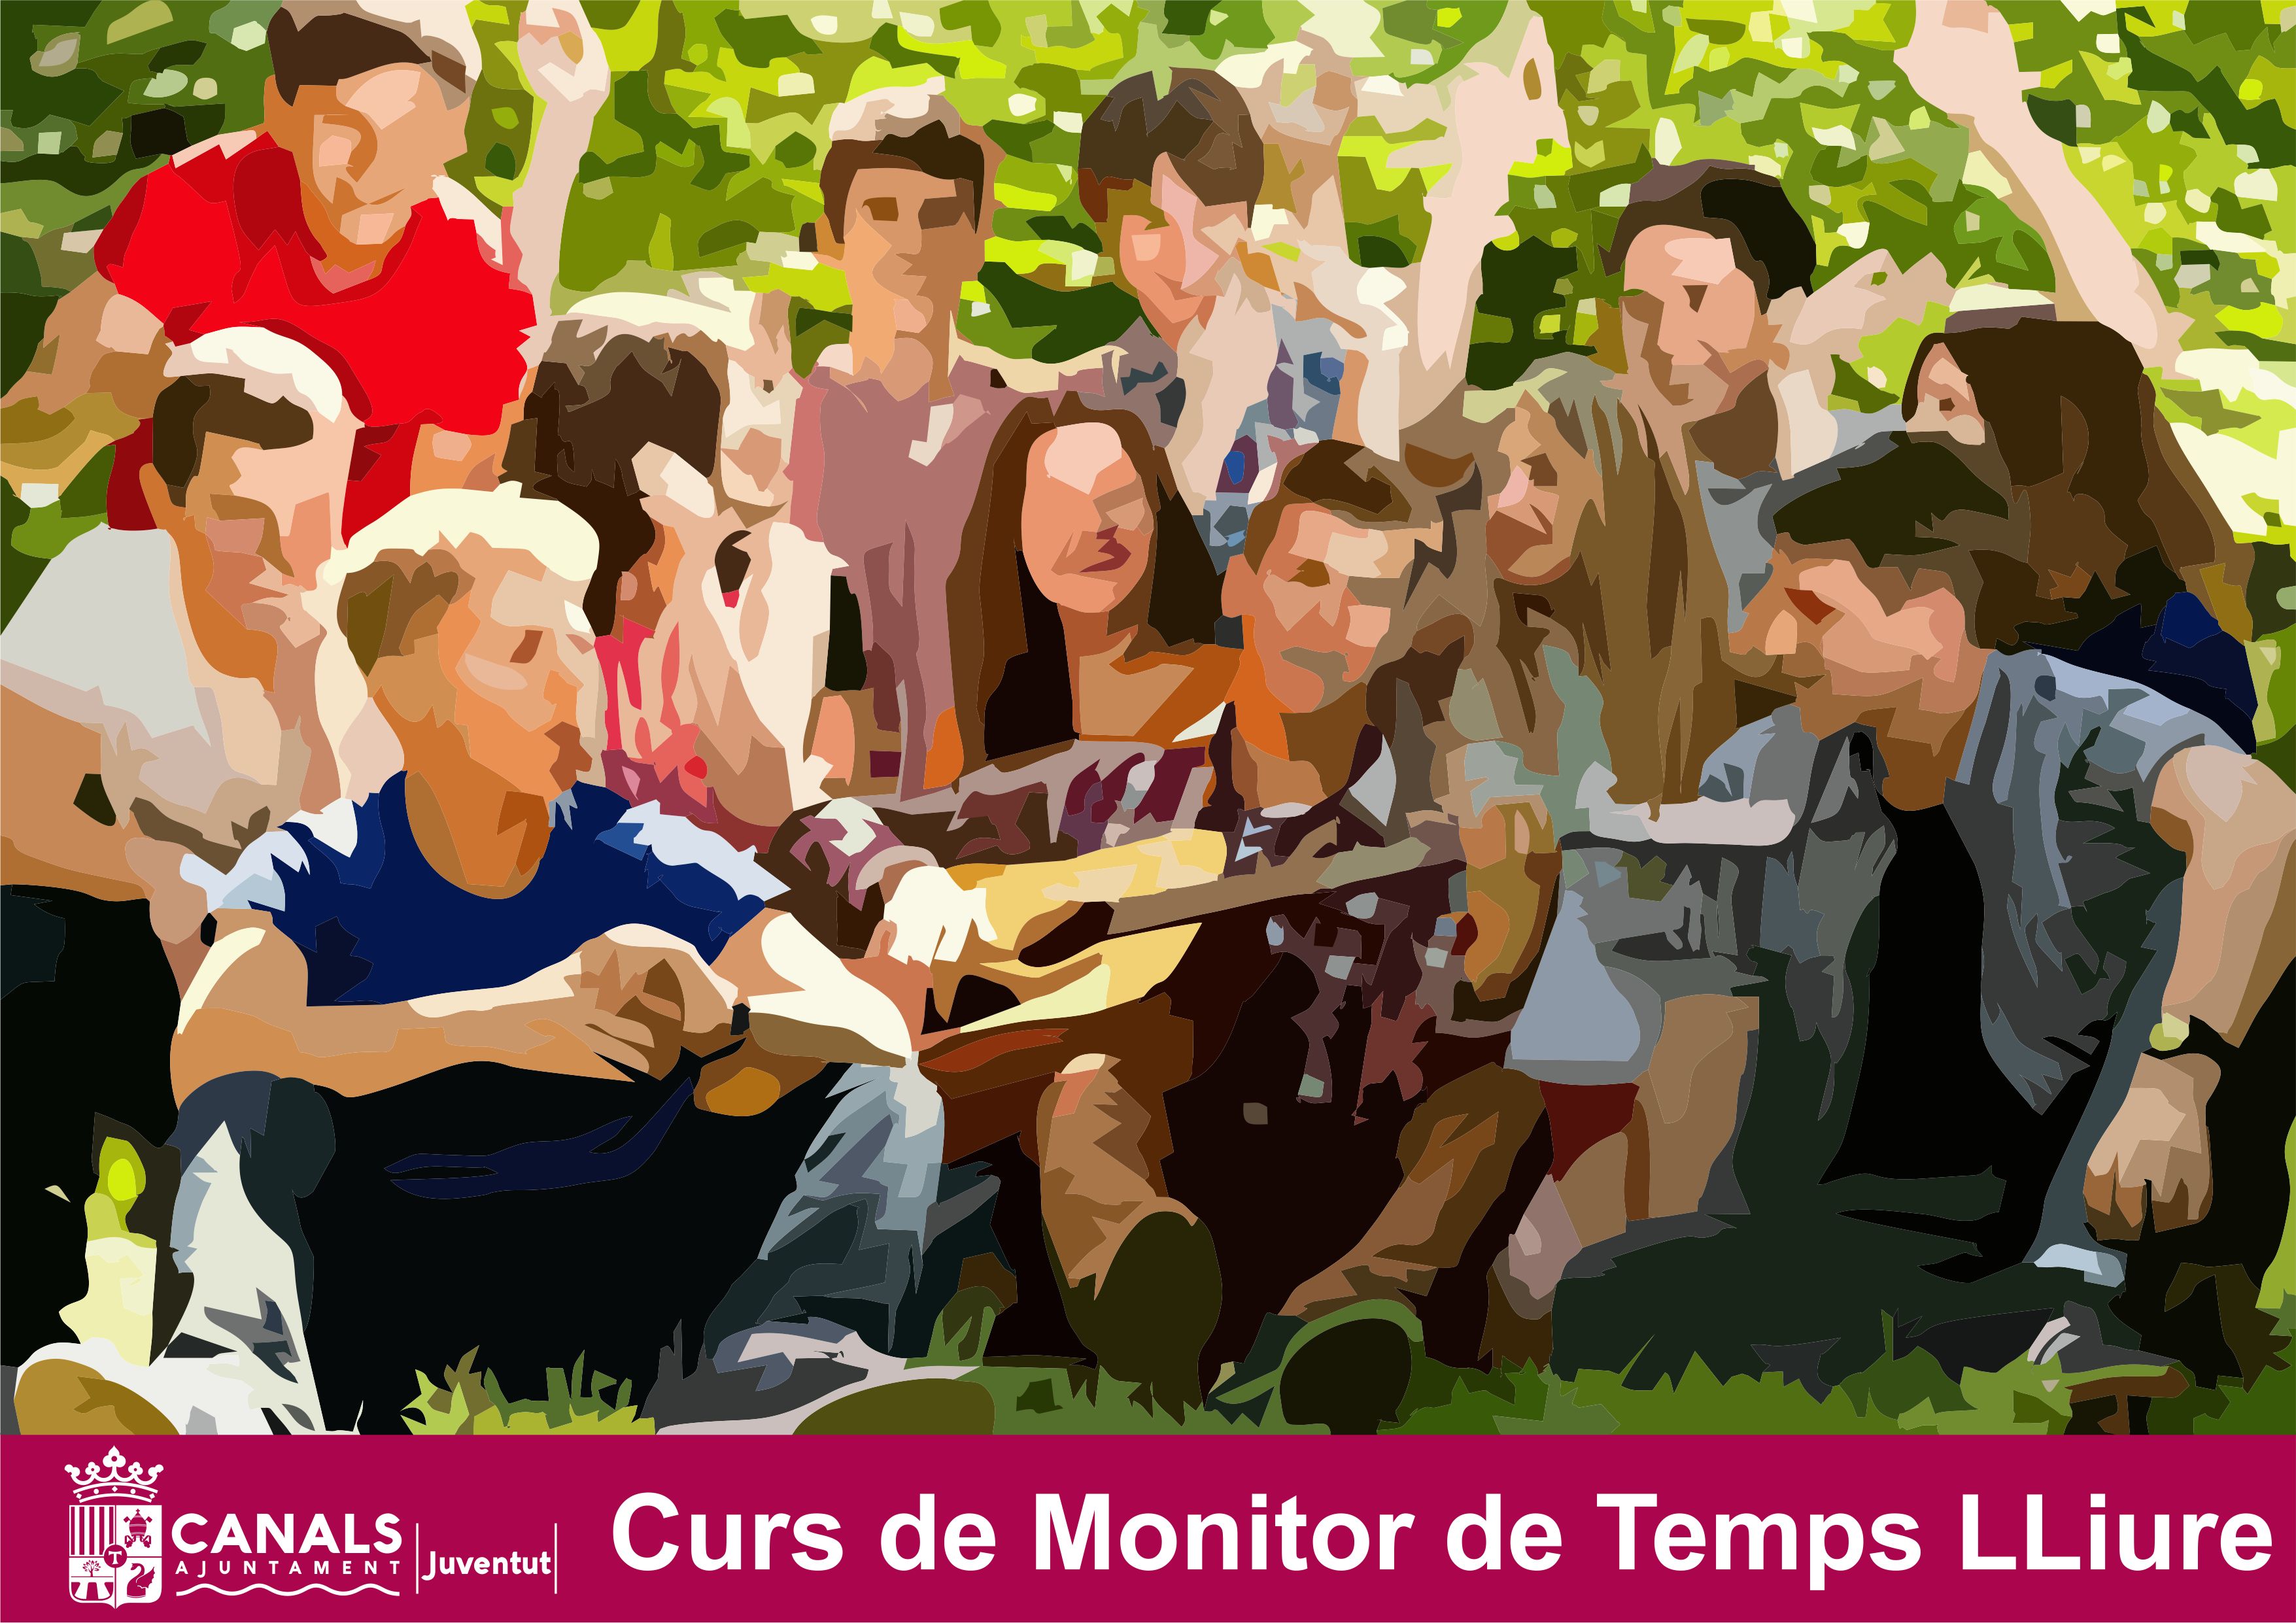 2017.02.24 Curs Monitors temps Lliure. Ajuntament de Canals.